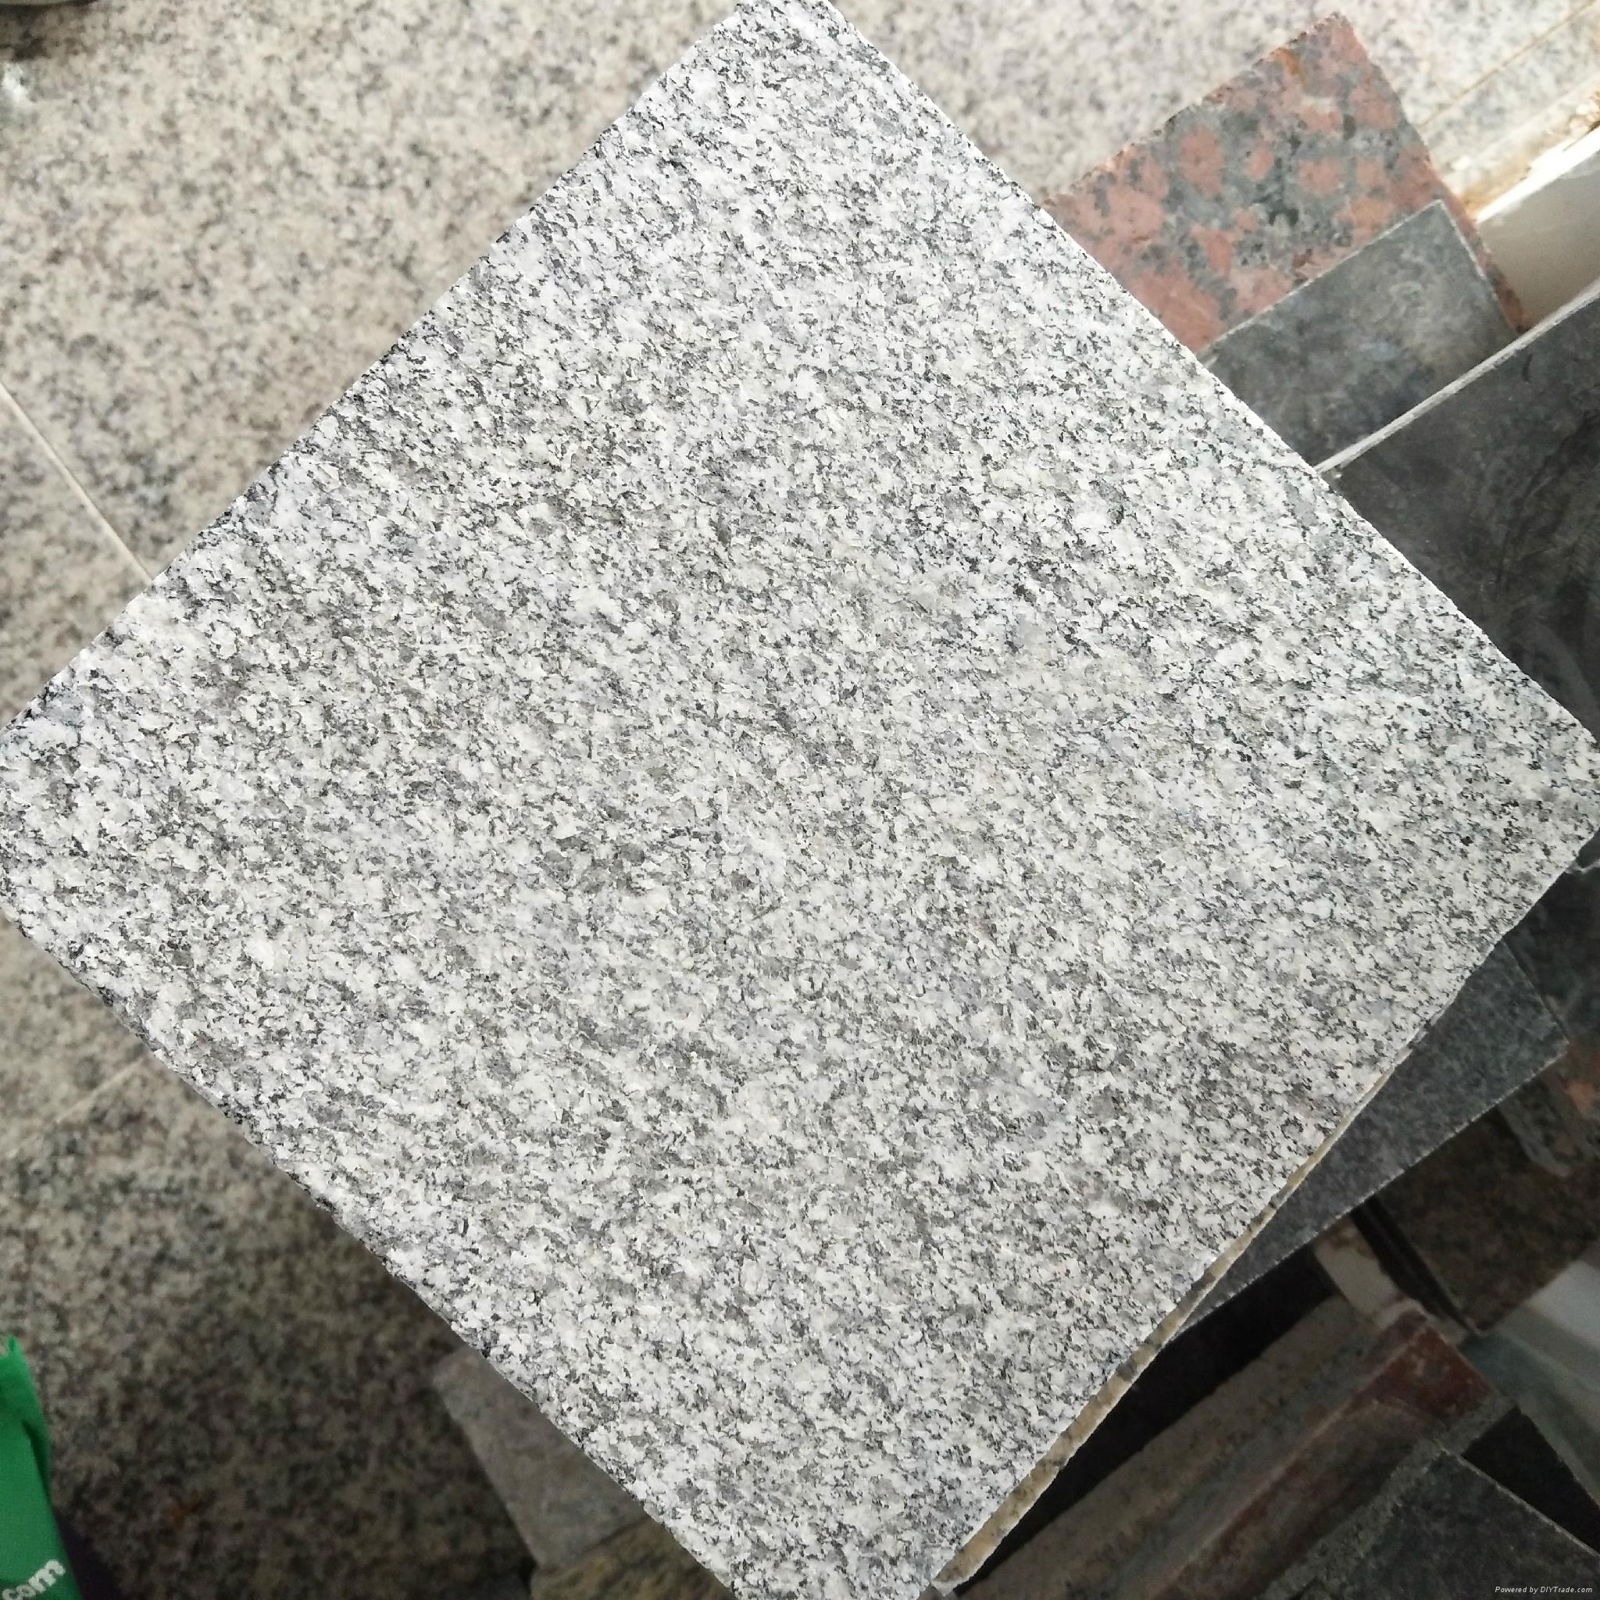 G688 Granite Tiles and Slabs China Grey Granite Flooring Tiles Wall Tiles Granit 5